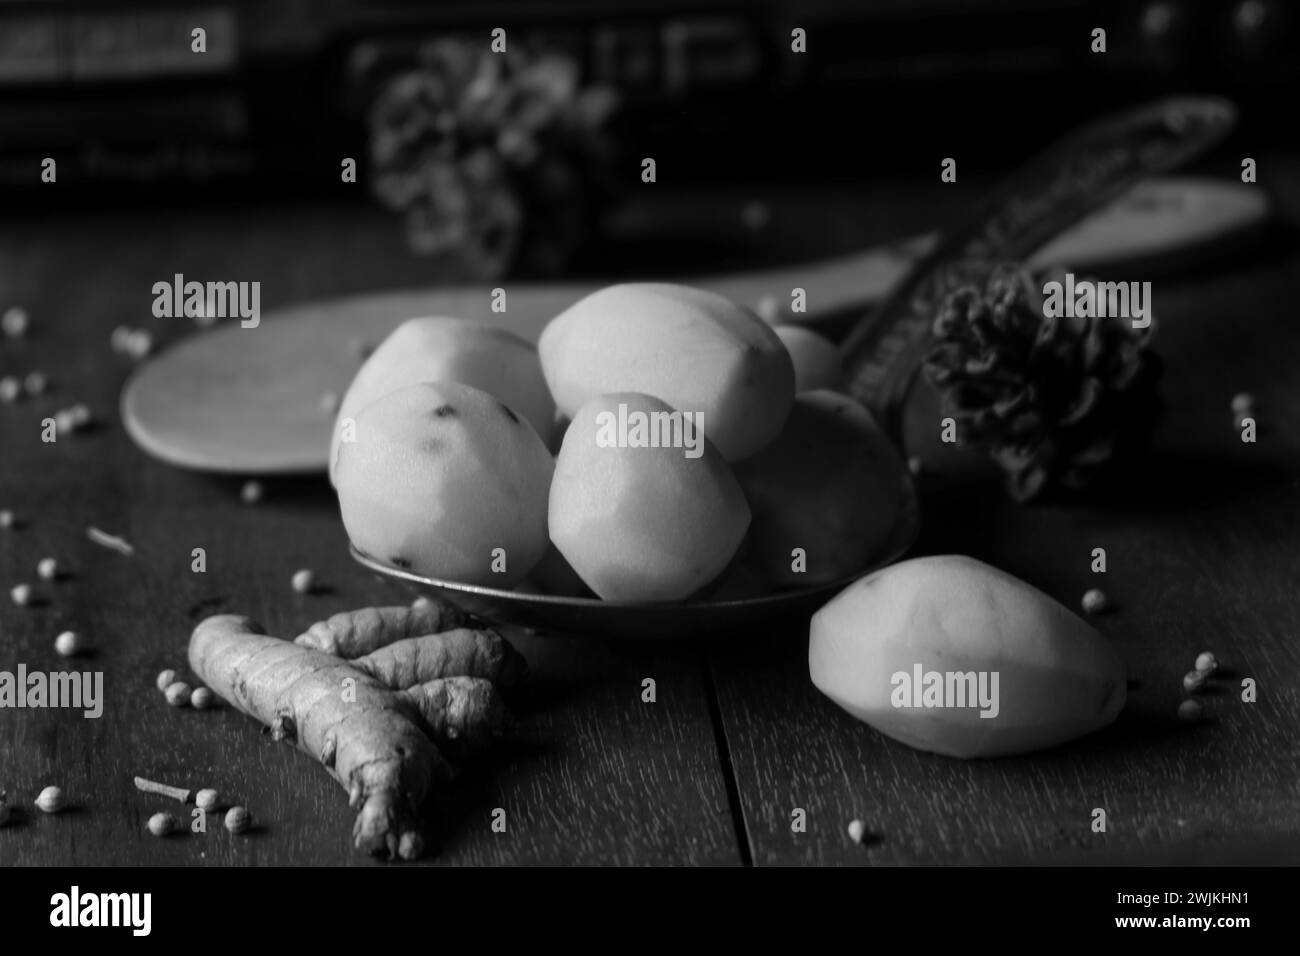 La photo est d'épices de cuisine sous forme de pommes de terre, curcuma, poivre blanc sur fond d'une vieille radio Banque D'Images